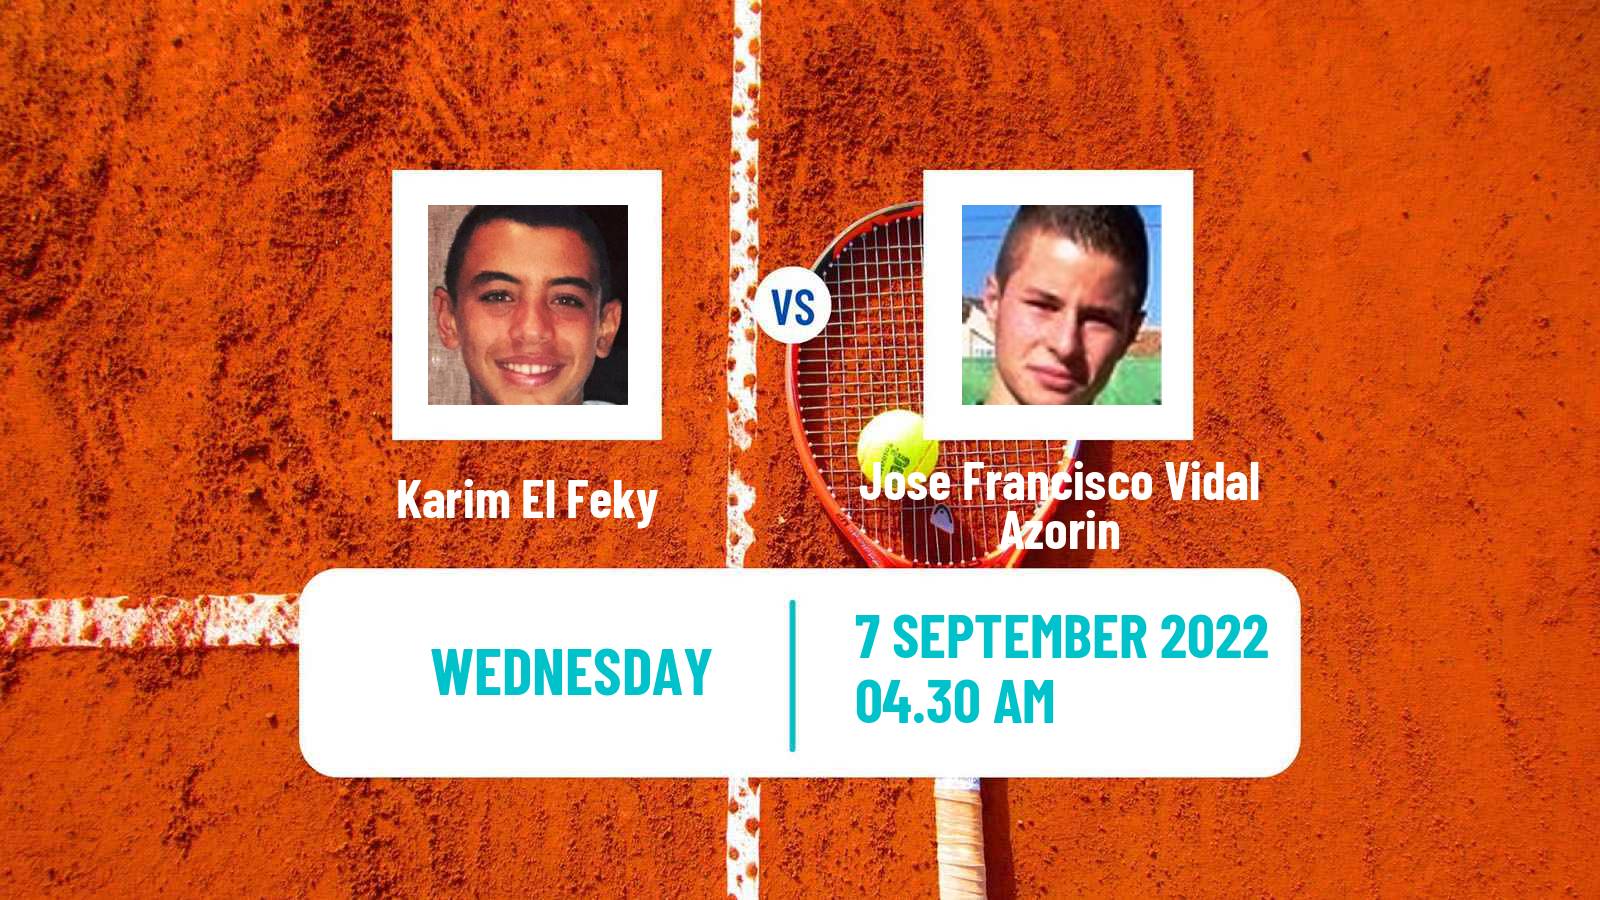 Tennis ITF Tournaments Karim El Feky - Jose Francisco Vidal Azorin